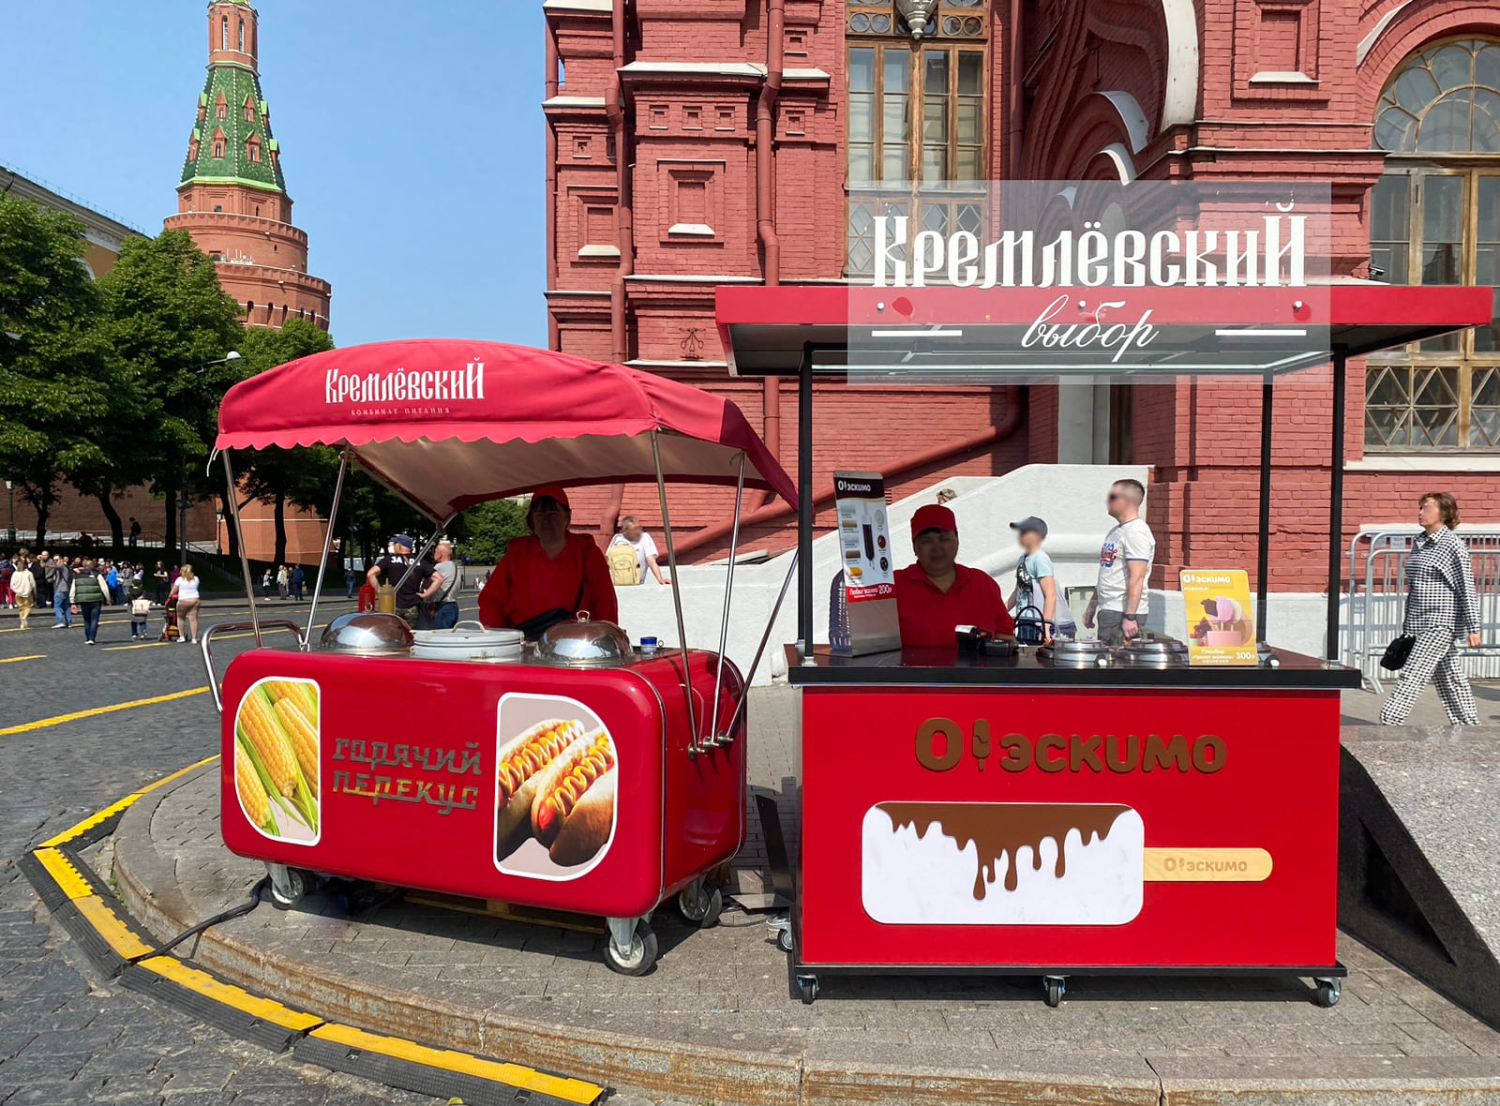 Кремлевский выбор Красная площадь